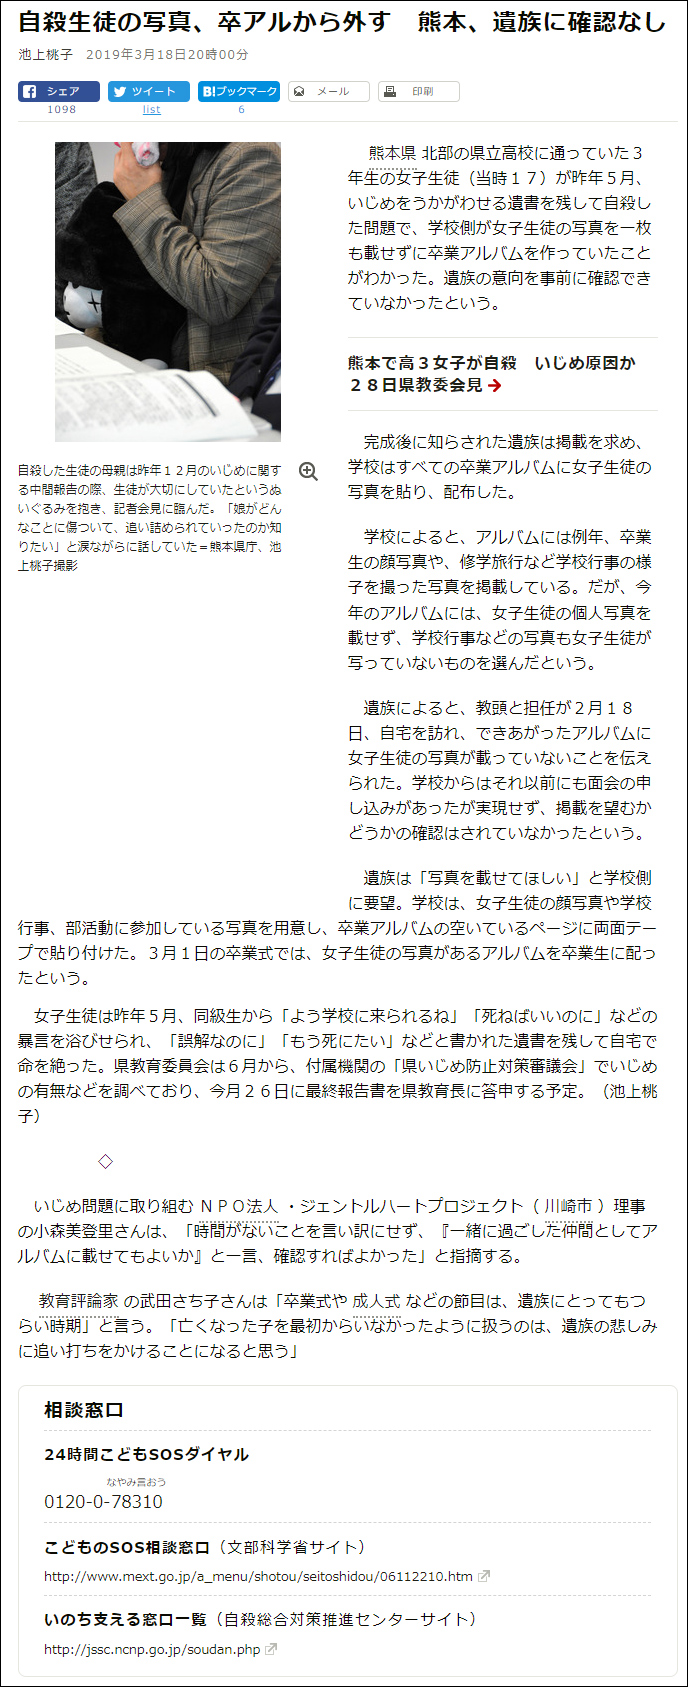 武田さち子：朝日新聞掲載、2019年3月18日「自殺生徒の写真、卒アルから外す　熊本、遺族に確認なし」